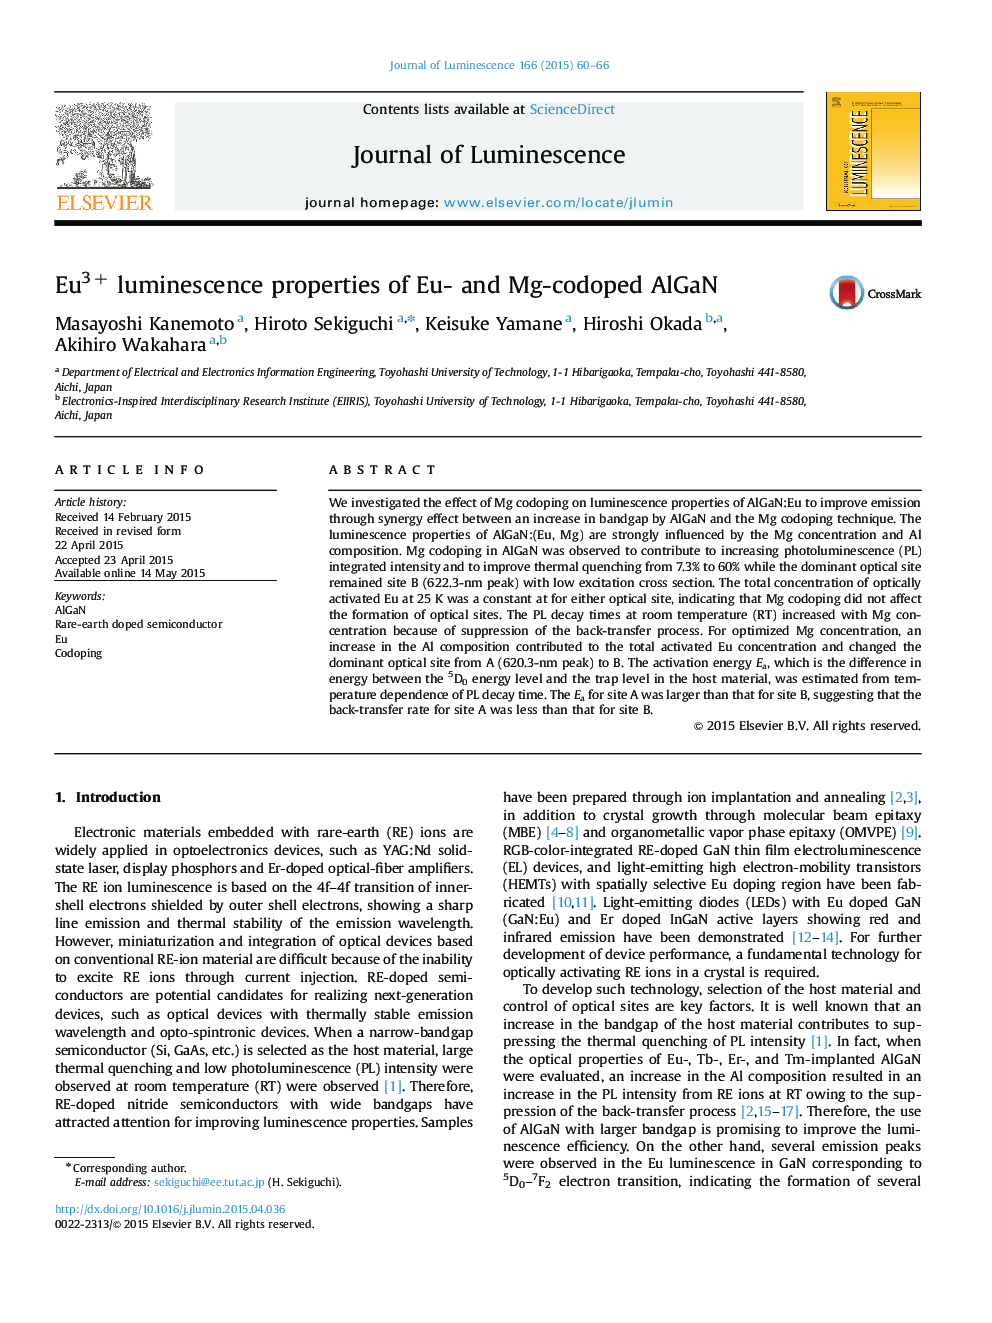 Eu3+ luminescence properties of Eu- and Mg-codoped AlGaN